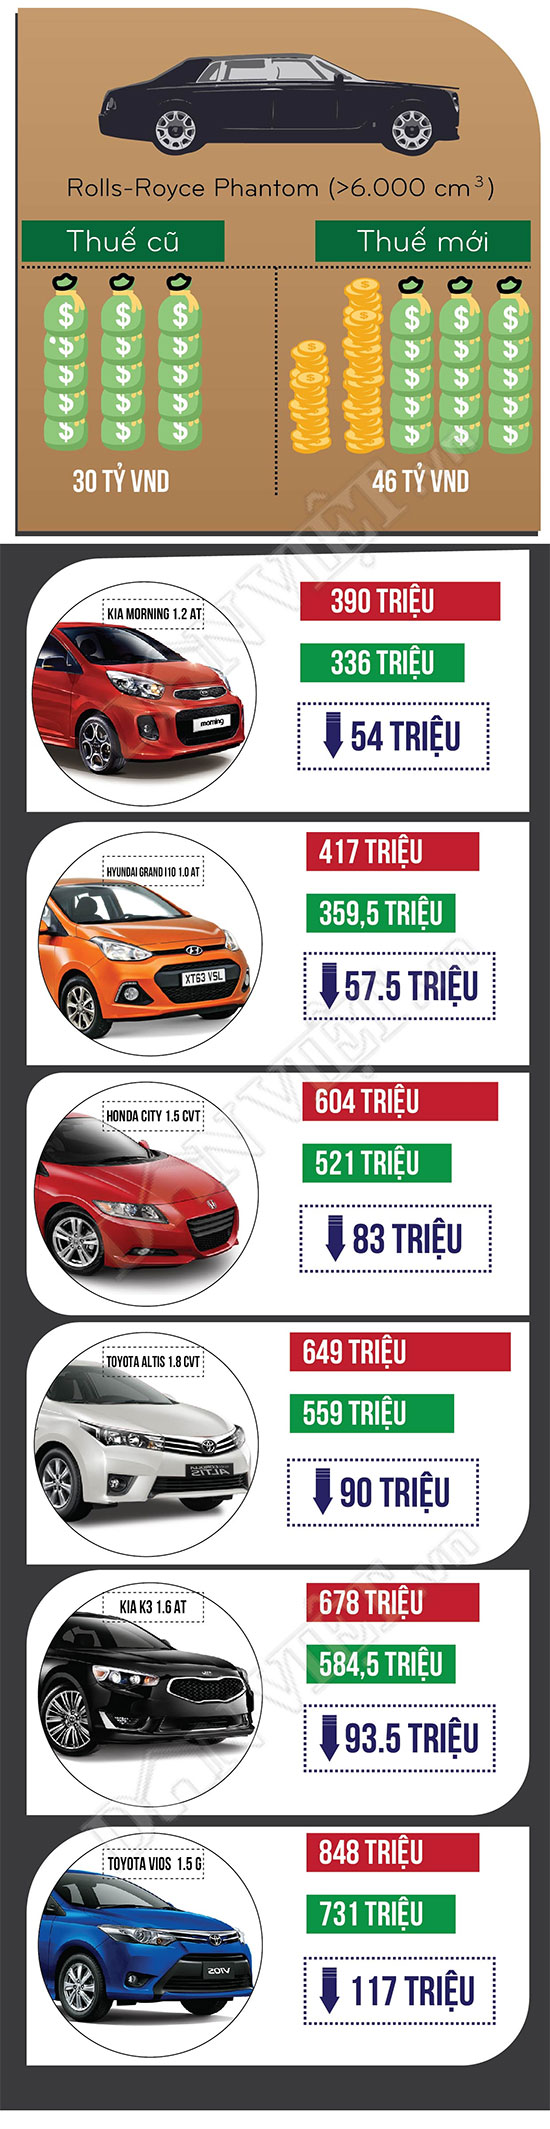 [Infographic] Giảm thuế xe ô tô, mua xe nào rẻ nhất?